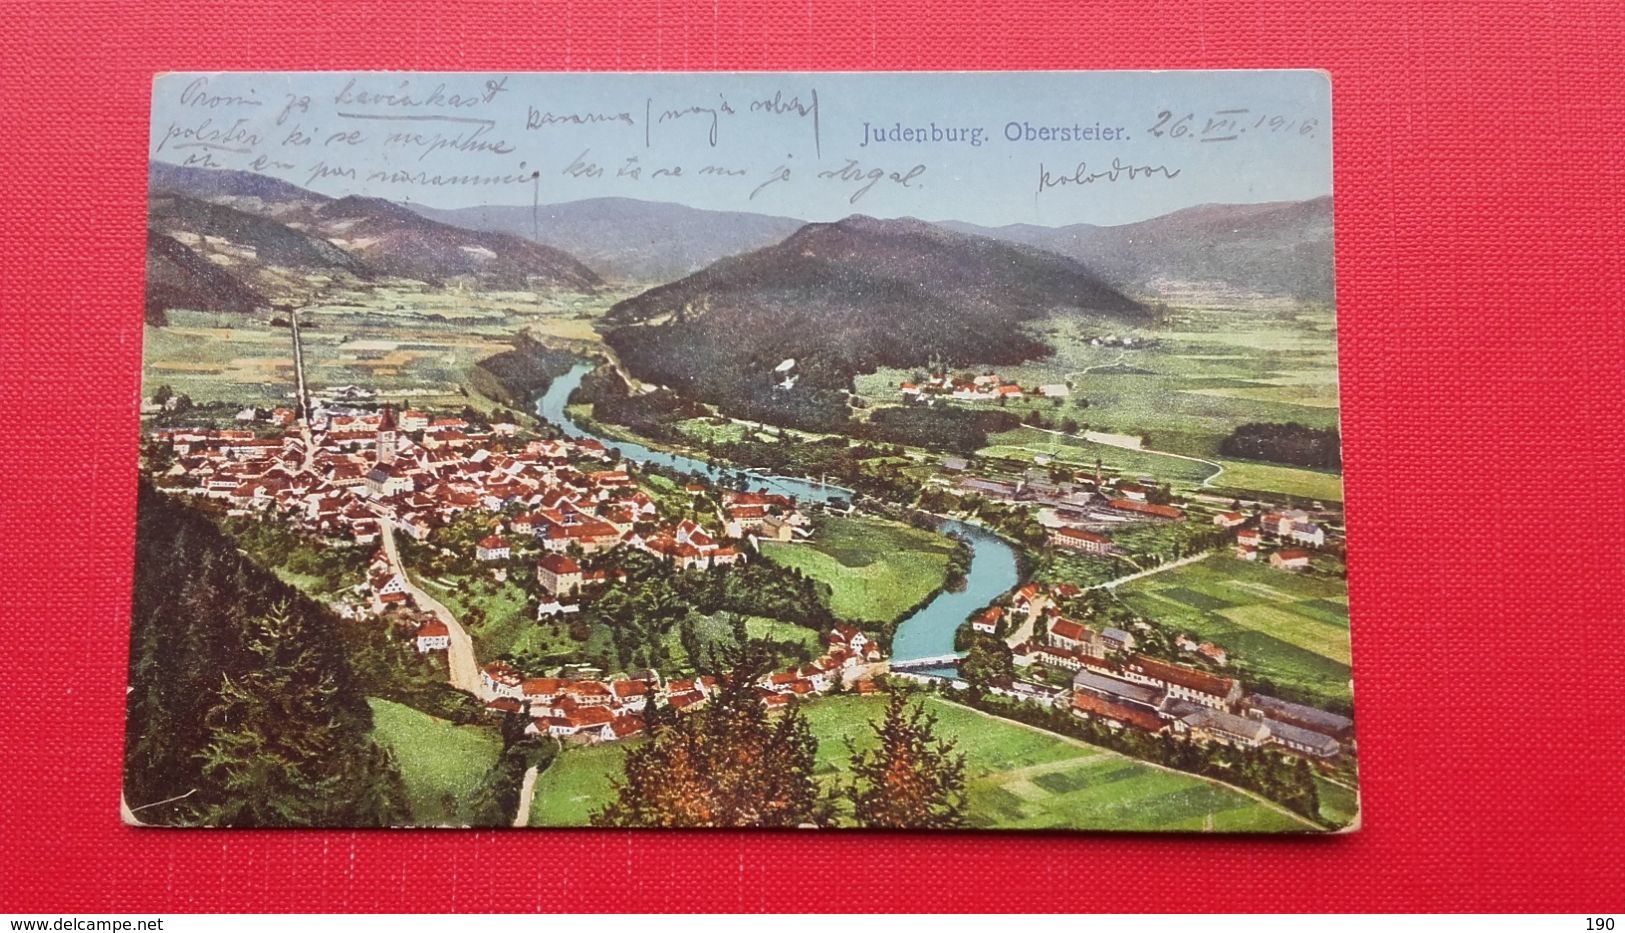 Judenburg 1915 - Judenburg